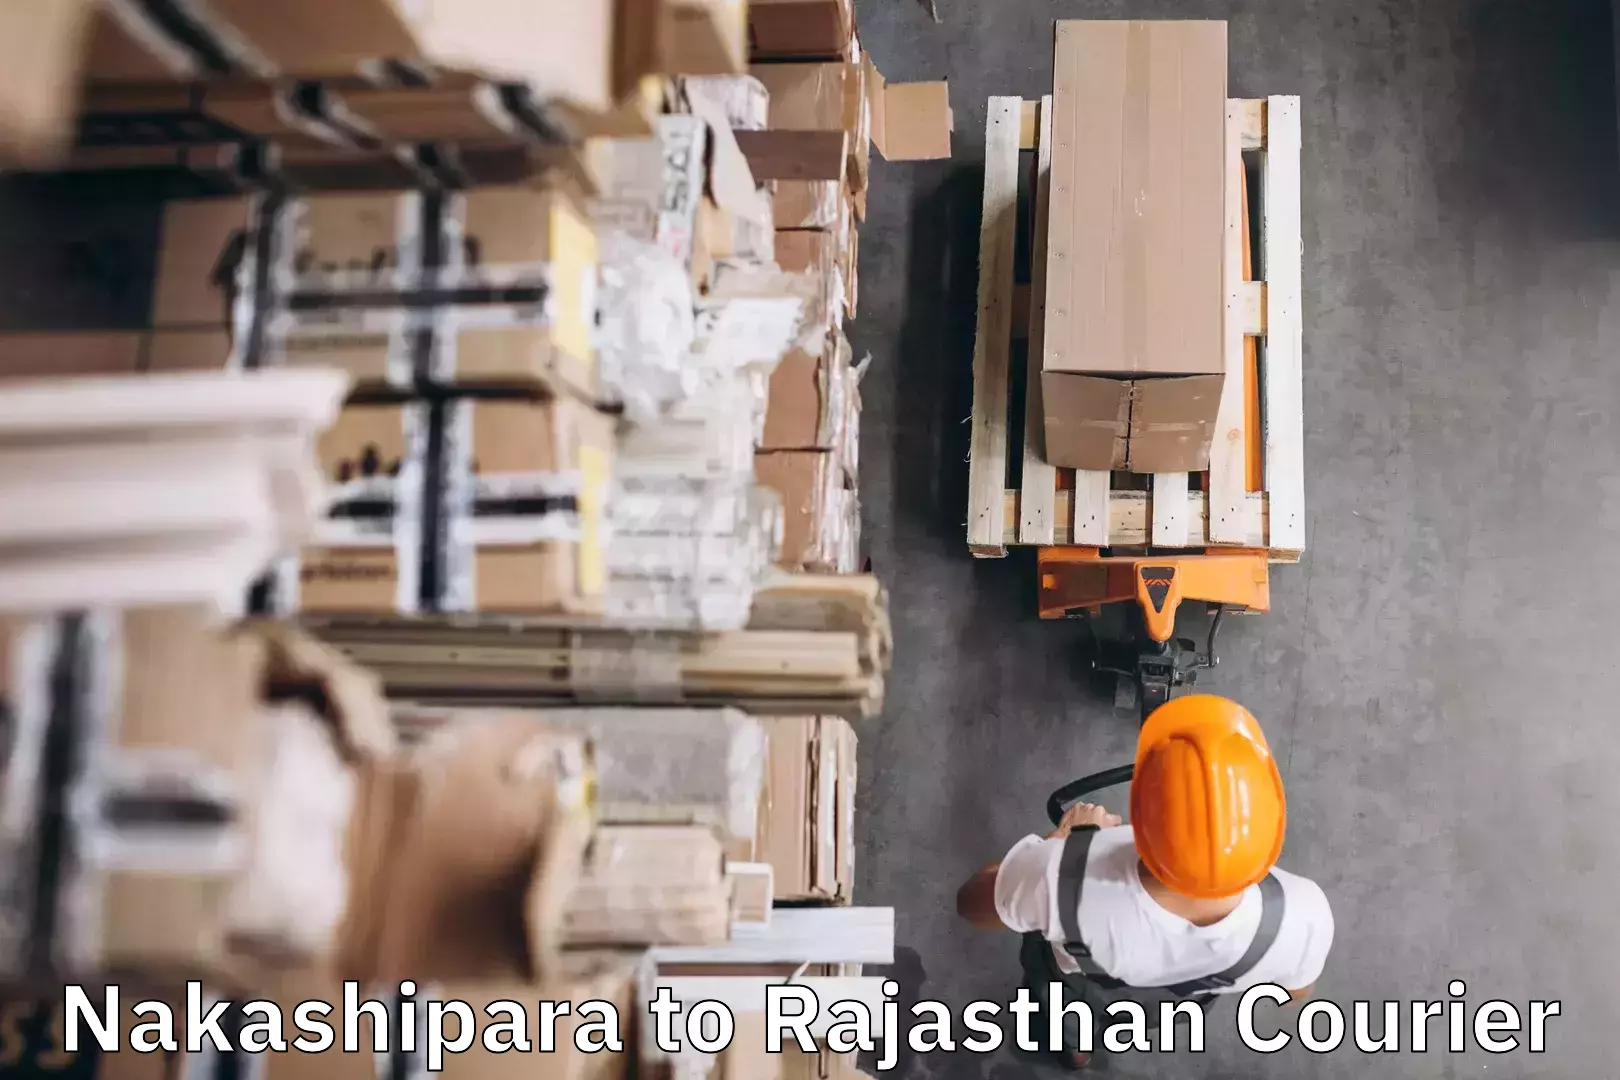 Baggage shipping experience Nakashipara to Rajasthan